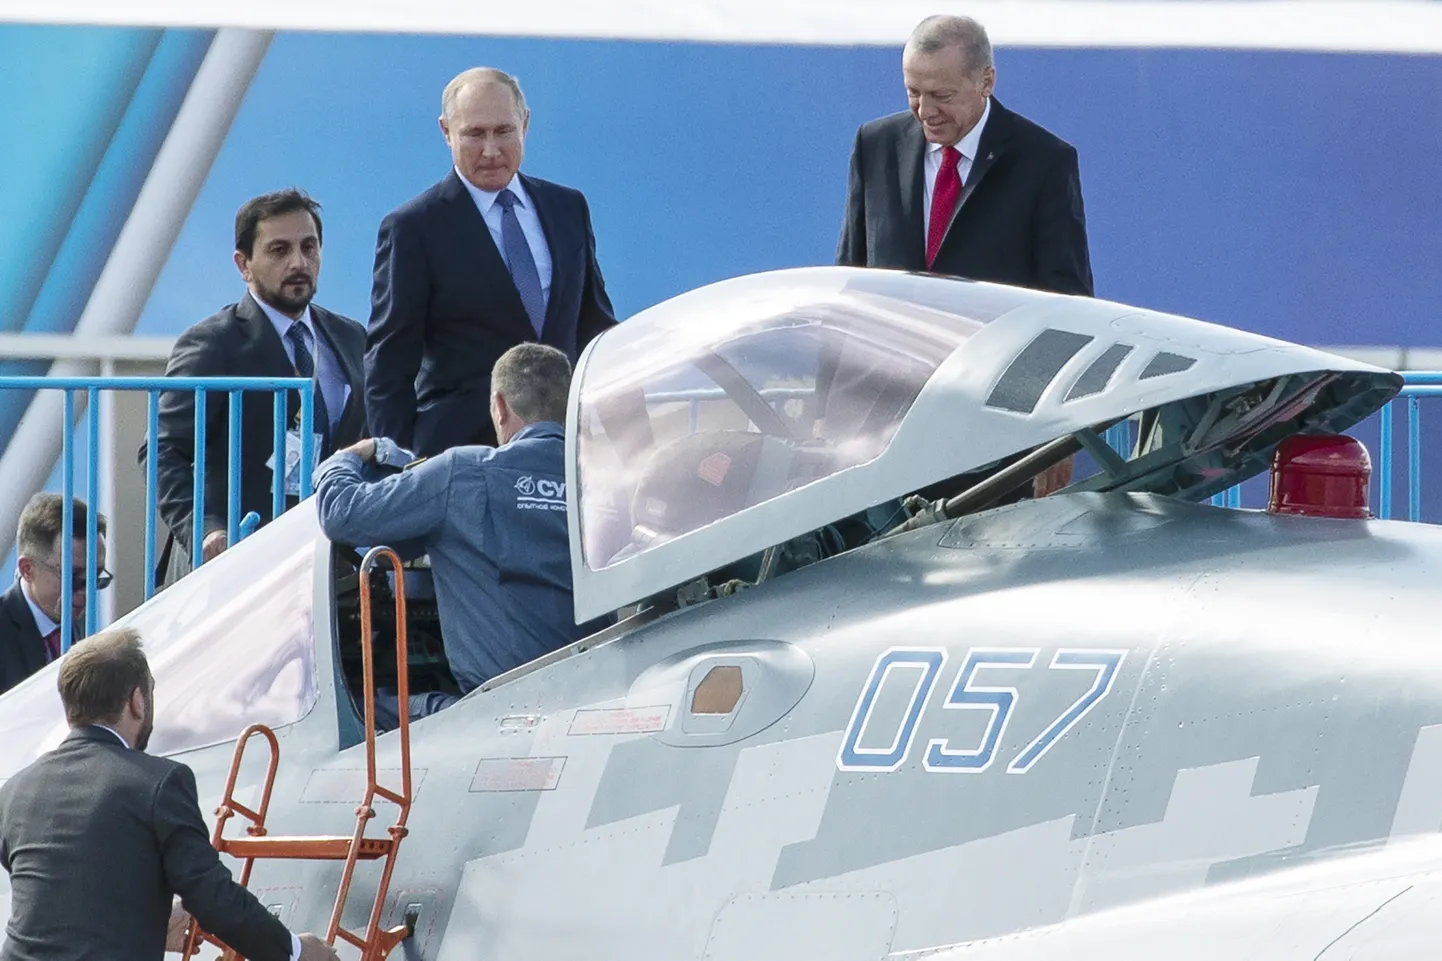 Recep Tayyip Erdoğan ja Vladimir Putin Vene sõjalennukiga tutvust tegemas.